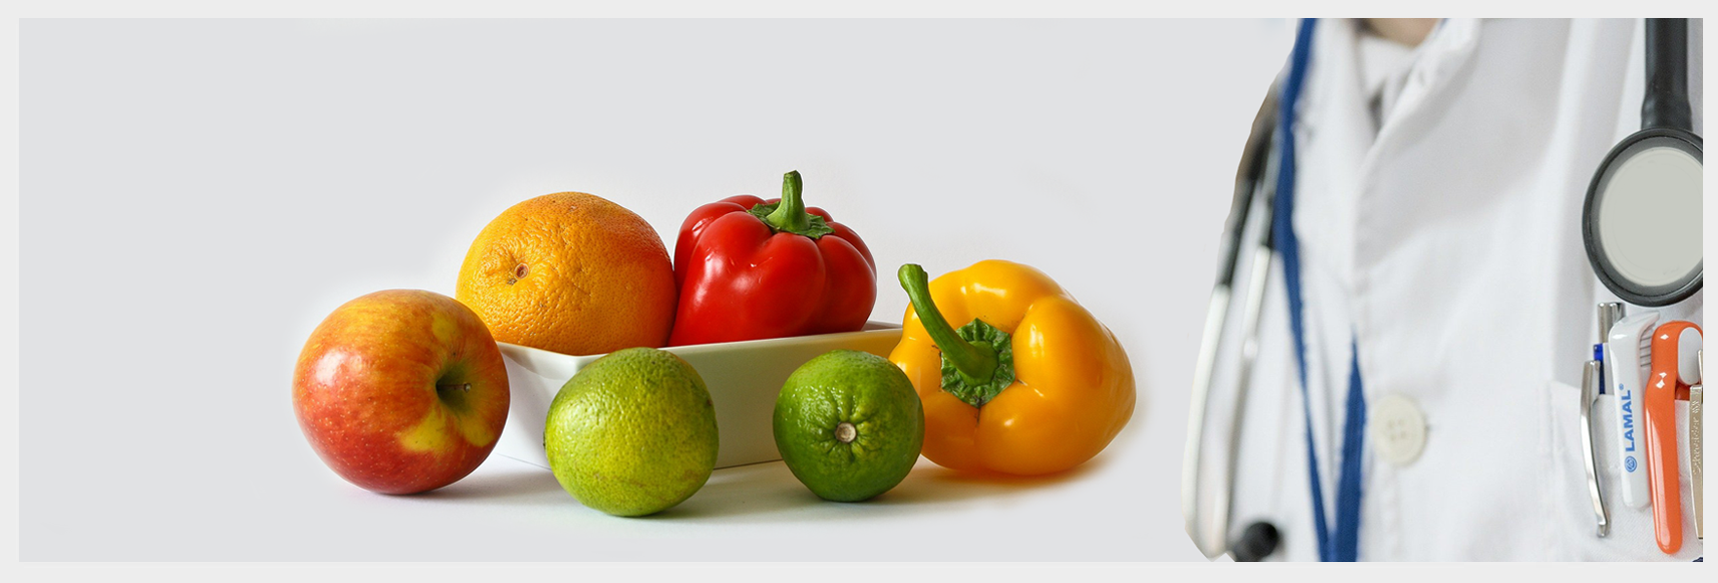 zestaw owoców i warzyw polecany przez lekarza